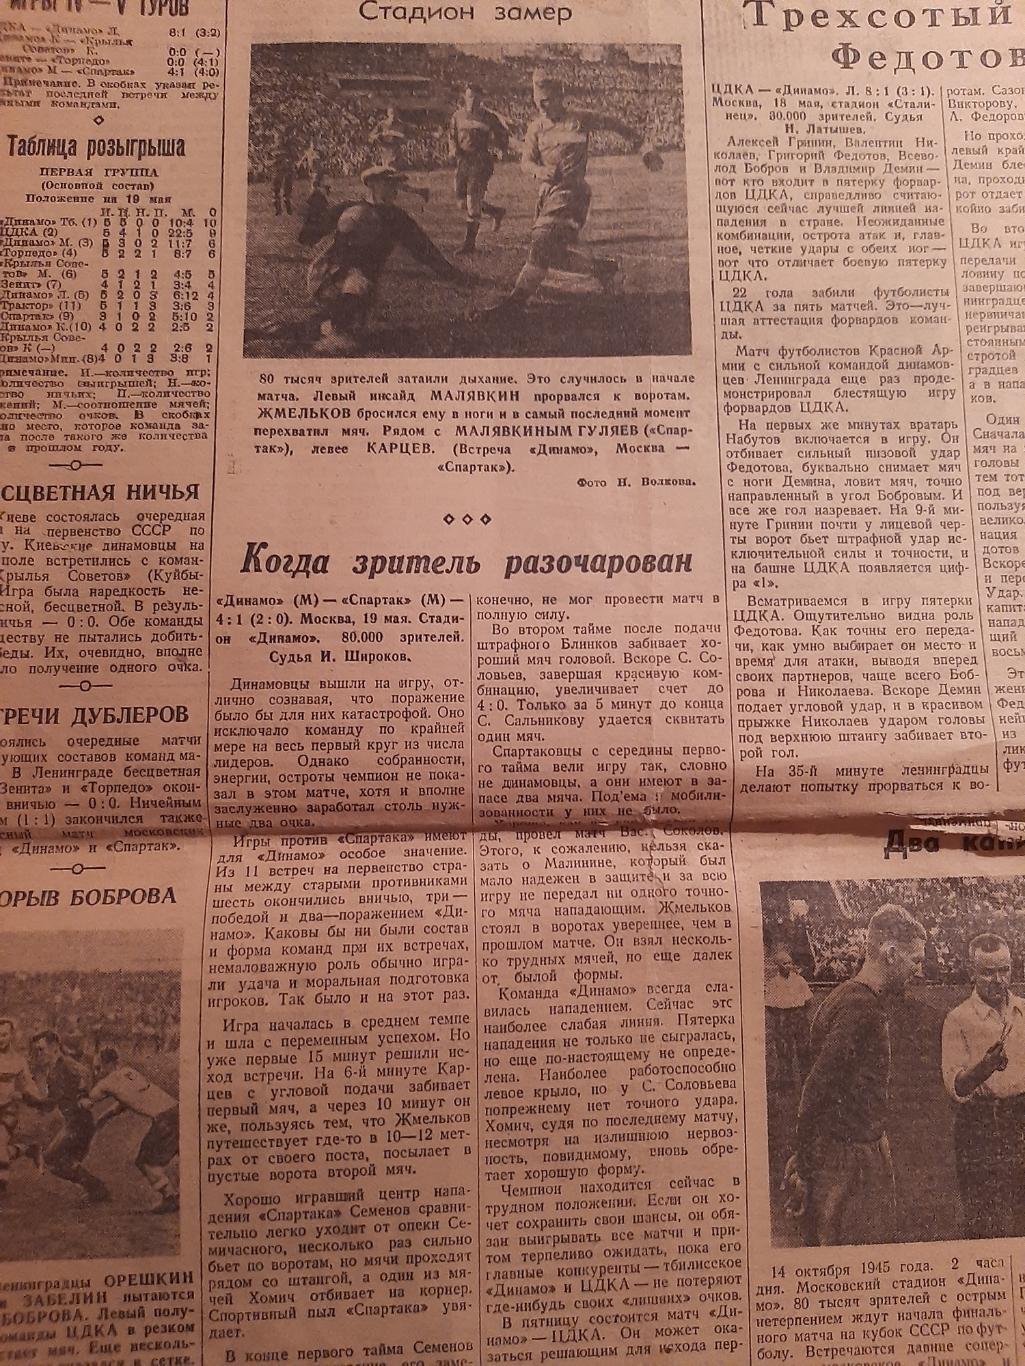 Вырезка 1946 Зенит - Торпедо, Динамо М - Спартак, ЦДКА - Динамо Л